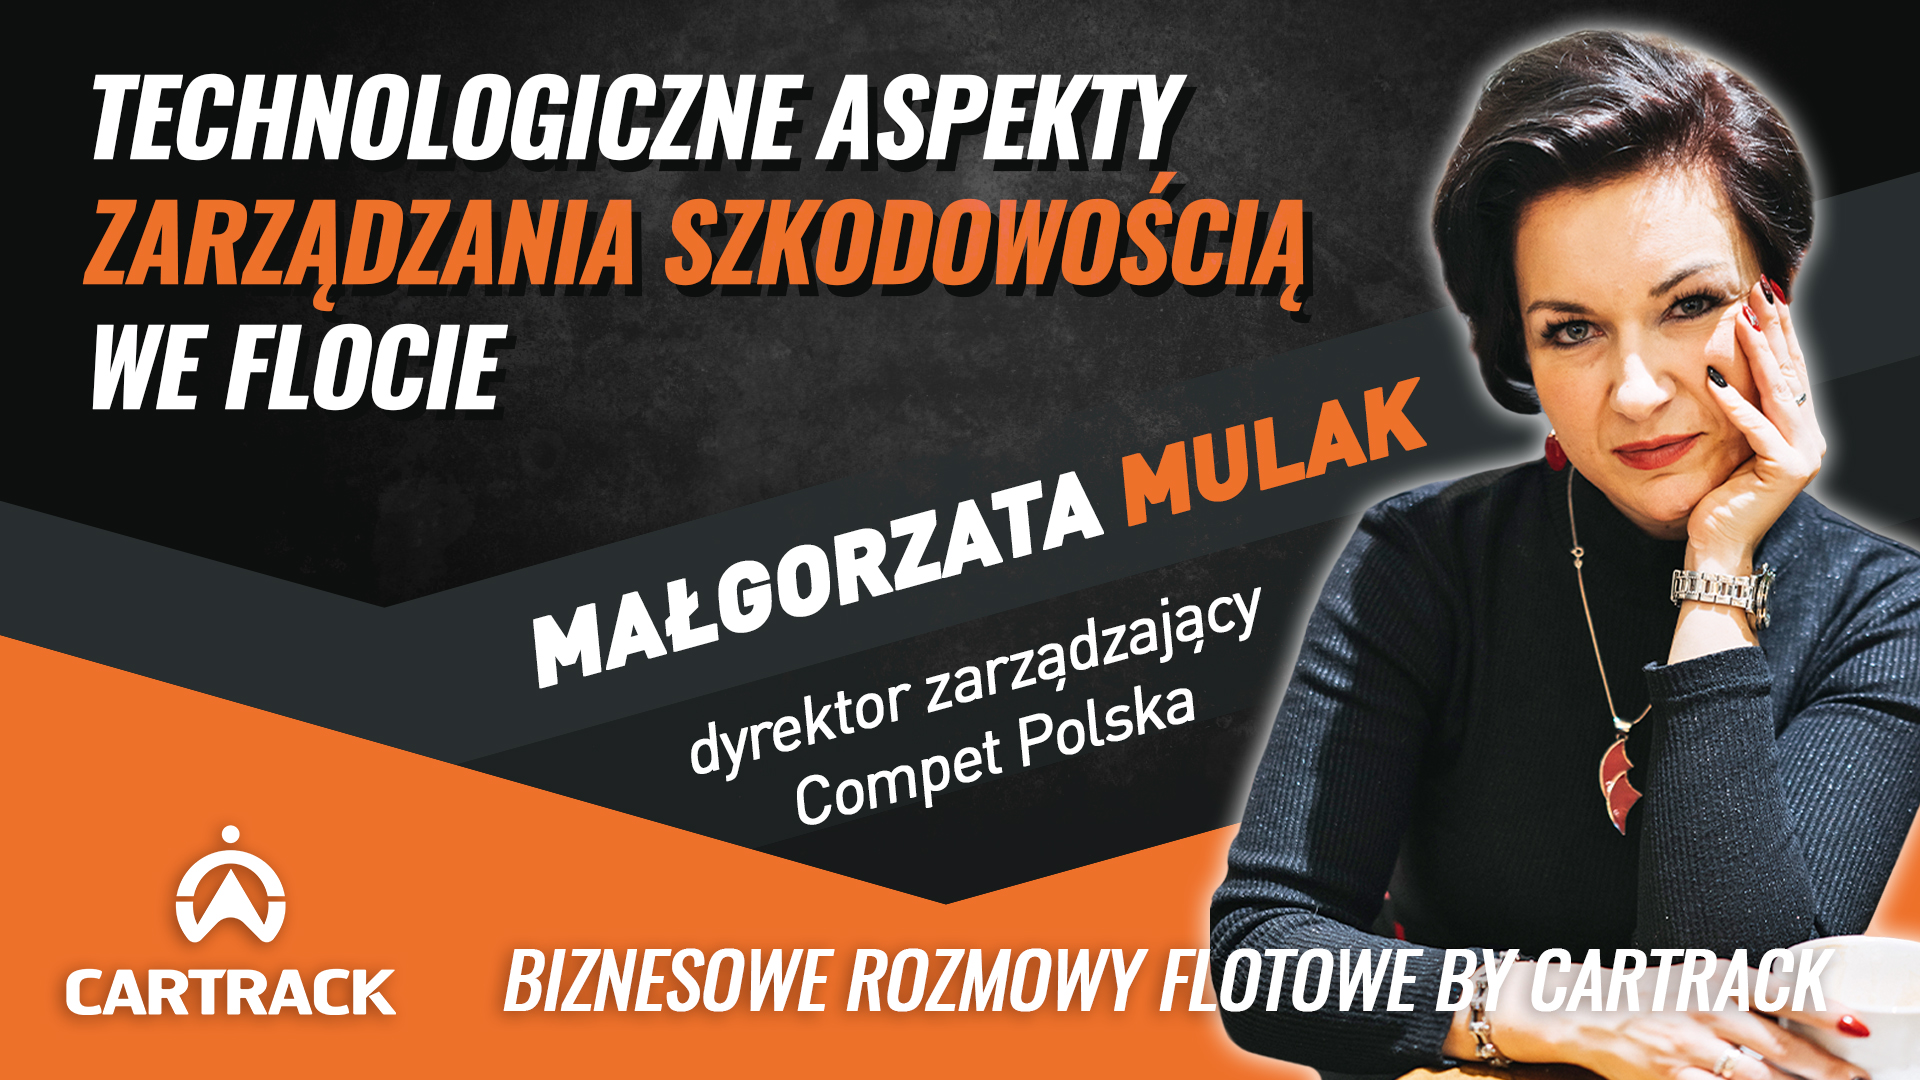 Zarządzanie Szkodowością  – Małgorzata Mulak, Compet Polska.